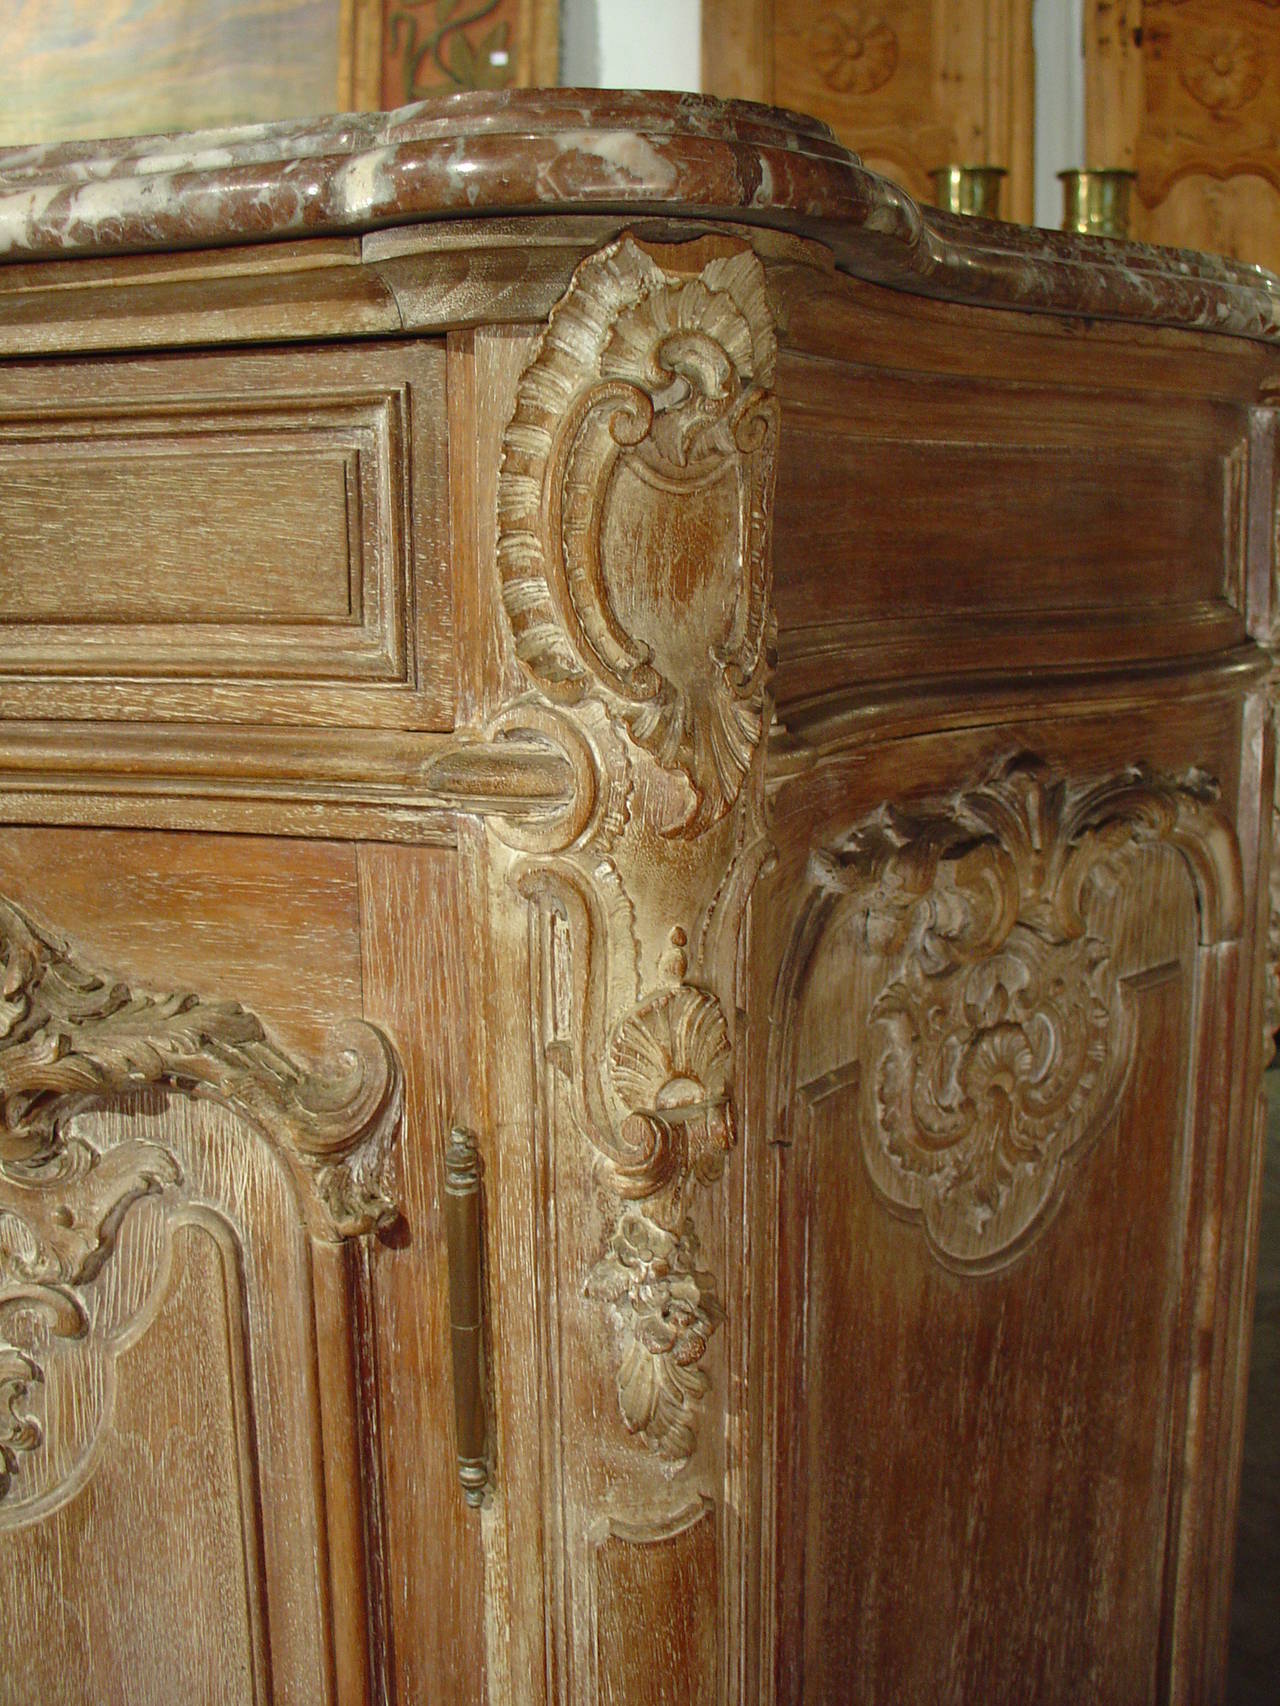 Marble Antique Louis XV Style Buffet de Chasse